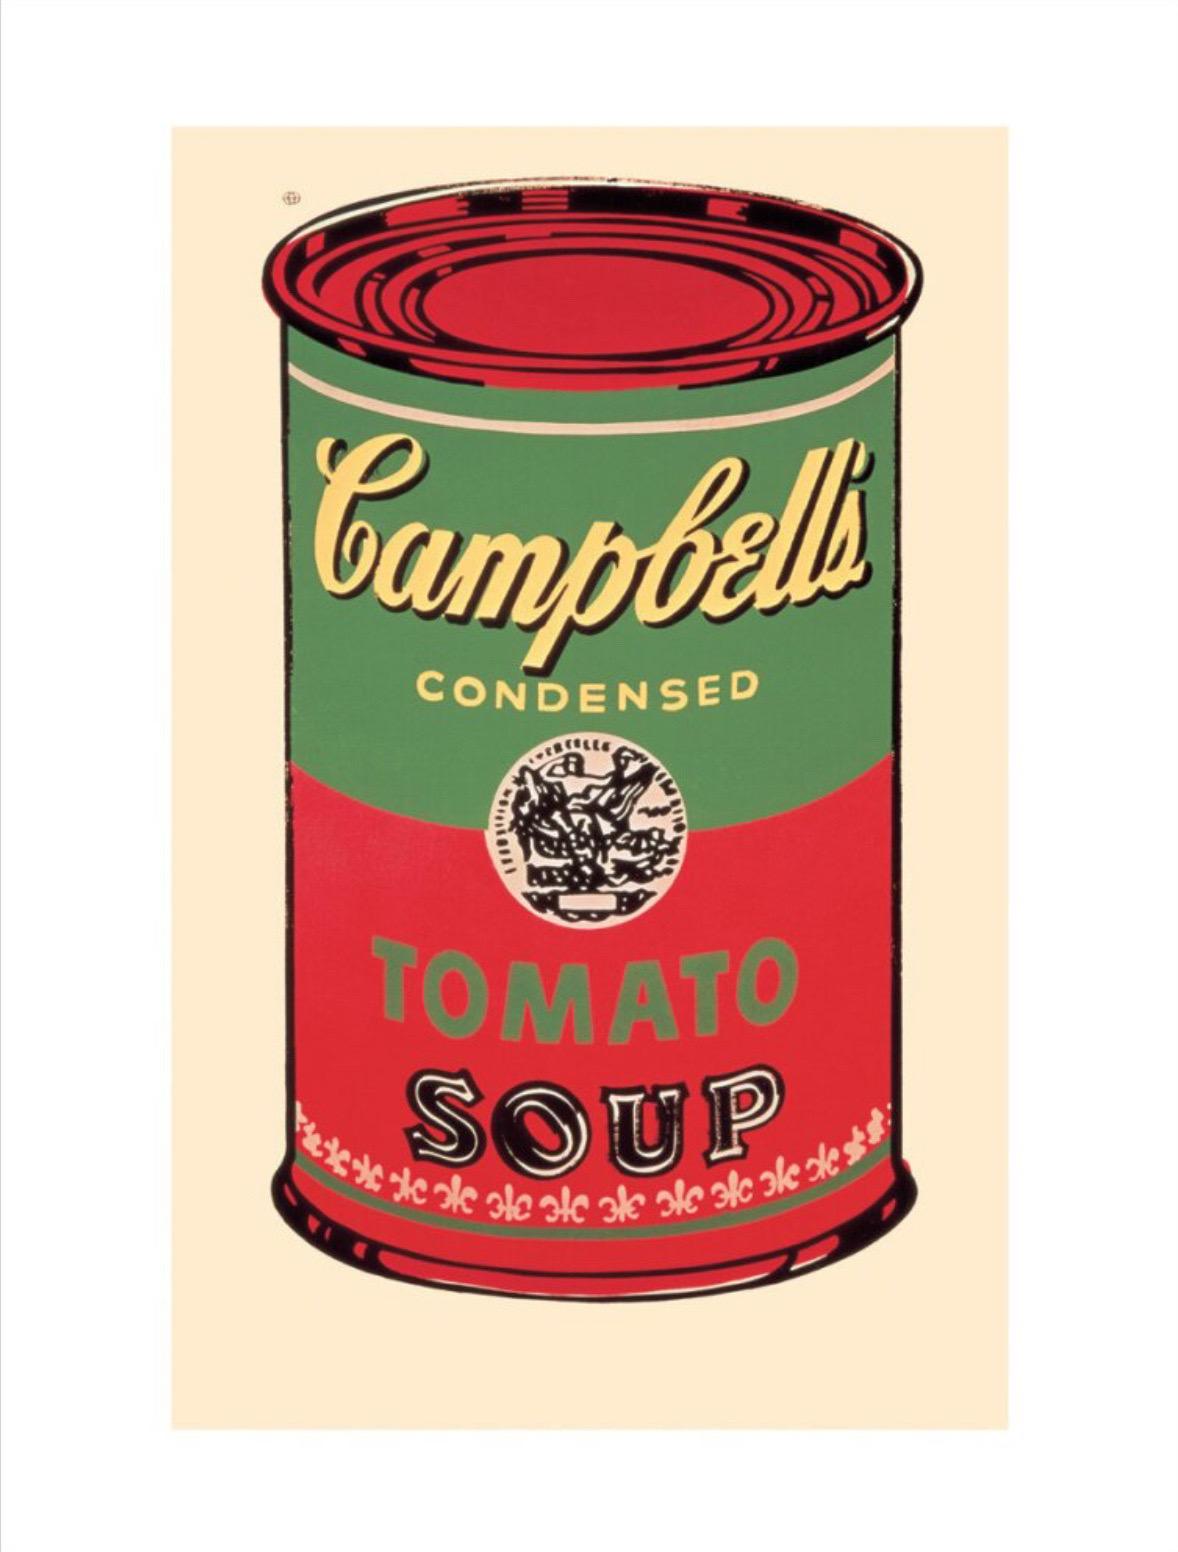 Andy Warhol, Campbell's Soup Can, 1965 (grün und rot)

250gsm gestrichenes grafisches Papier

Bildgröße 20 x 30 cm (7,87 x 11,81 Zoll) 

Papierformat 28 x 36 cm (11.02 x 14.17 in) 


Die Campbell's Soup Cans von Andy Warhol gehören zu den